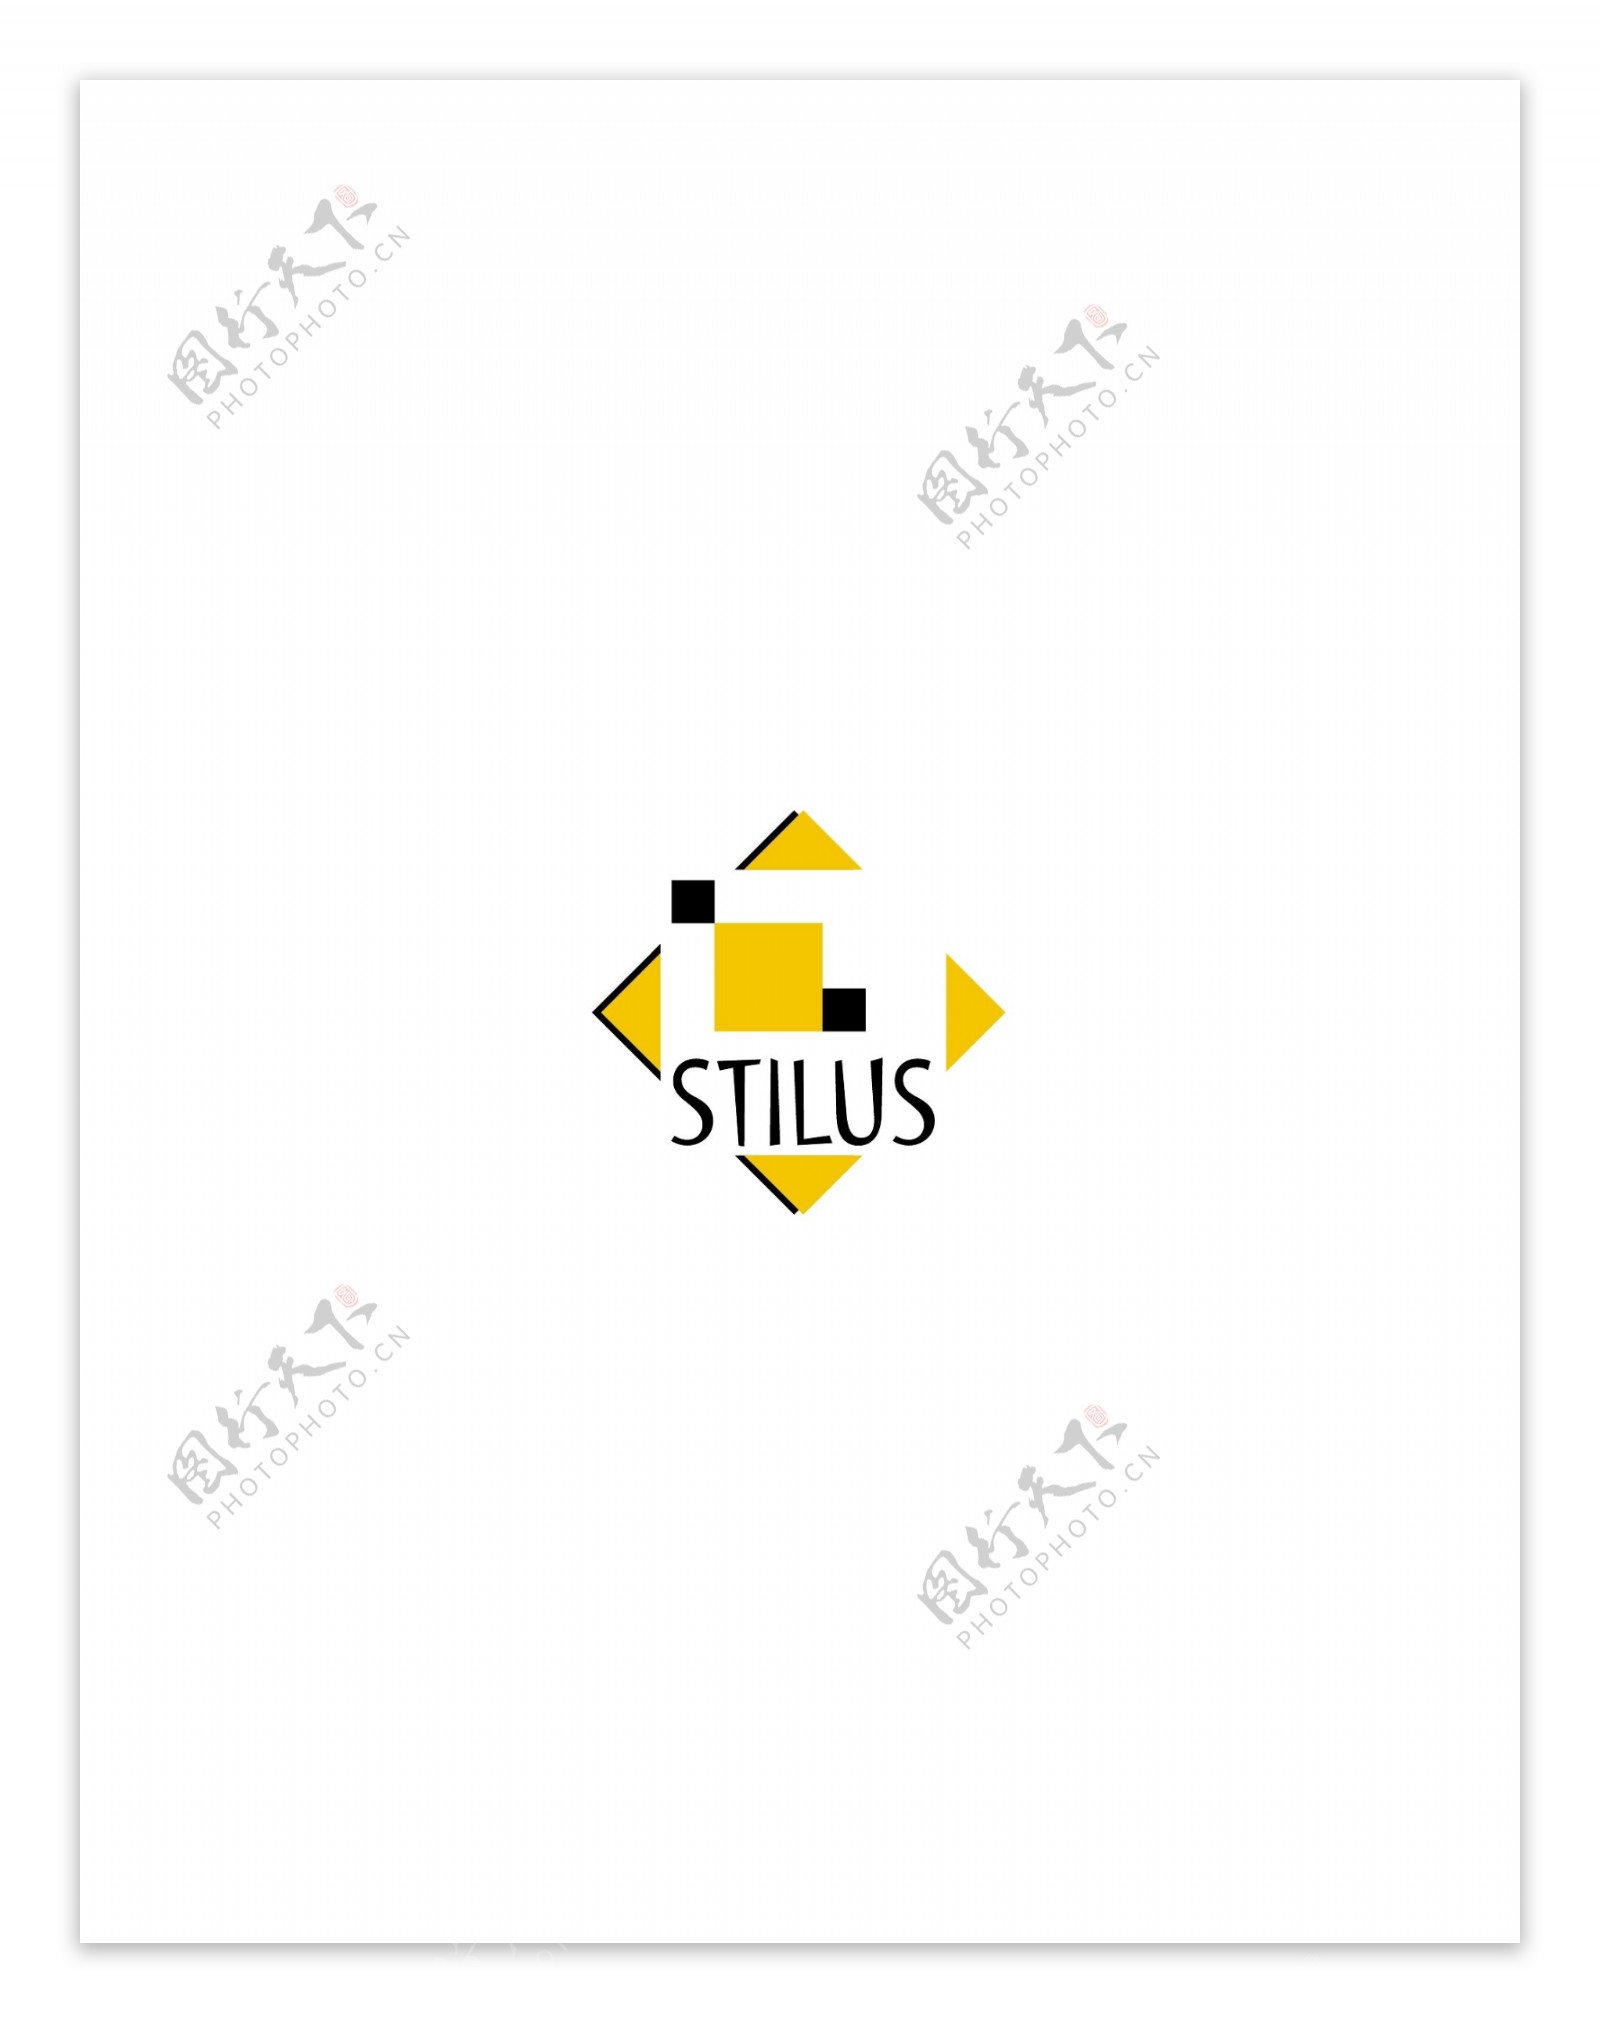 Stiluslogo设计欣赏Stilus广告设计LOGO下载标志设计欣赏